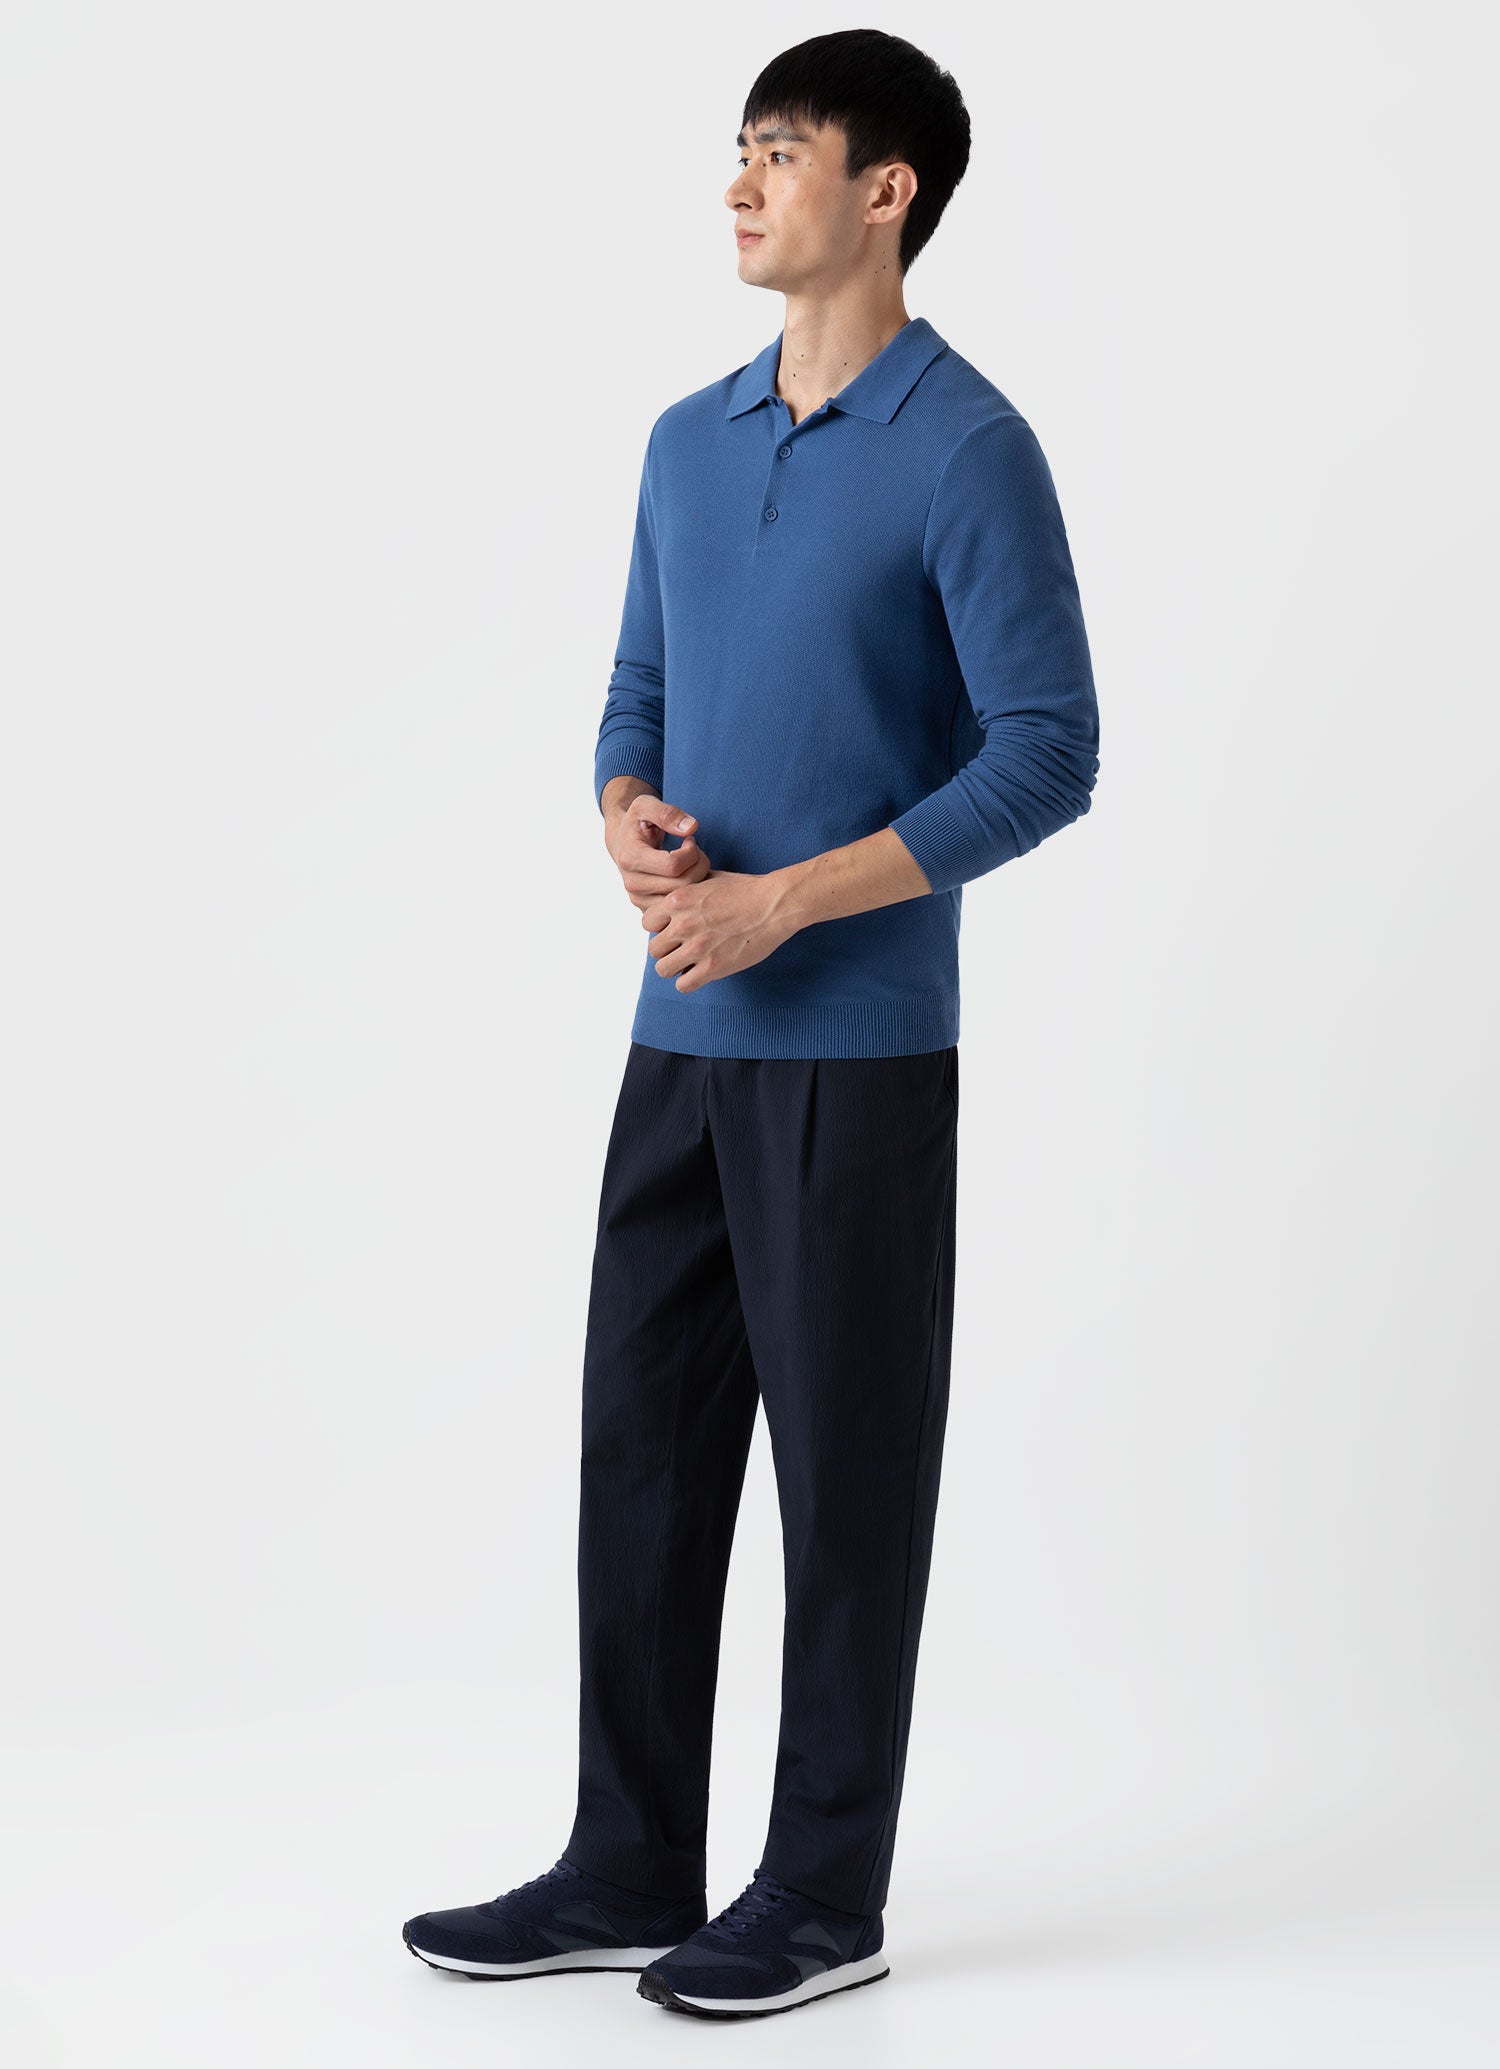 Men's Knit Long Sleeve Polo Shirt in Bluestone